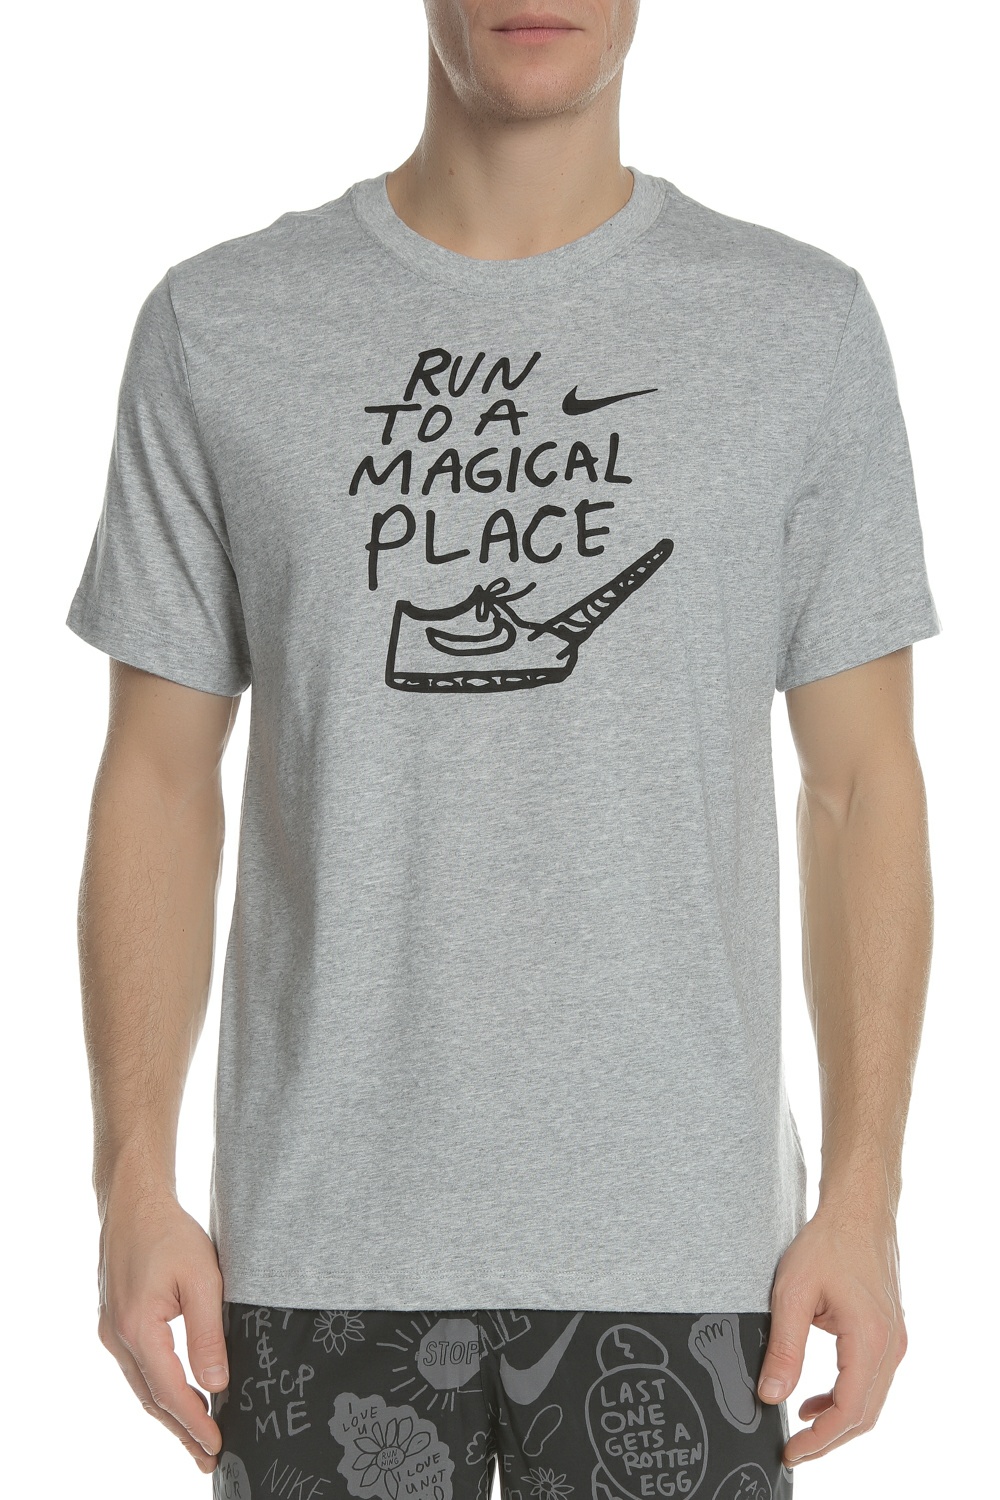 Ανδρικά/Ρούχα/Αθλητικά/T-shirt NIKE - Ανδρική κοντομάνικη μπλούζα NIKE DRY MAGIC PLACE γκρι